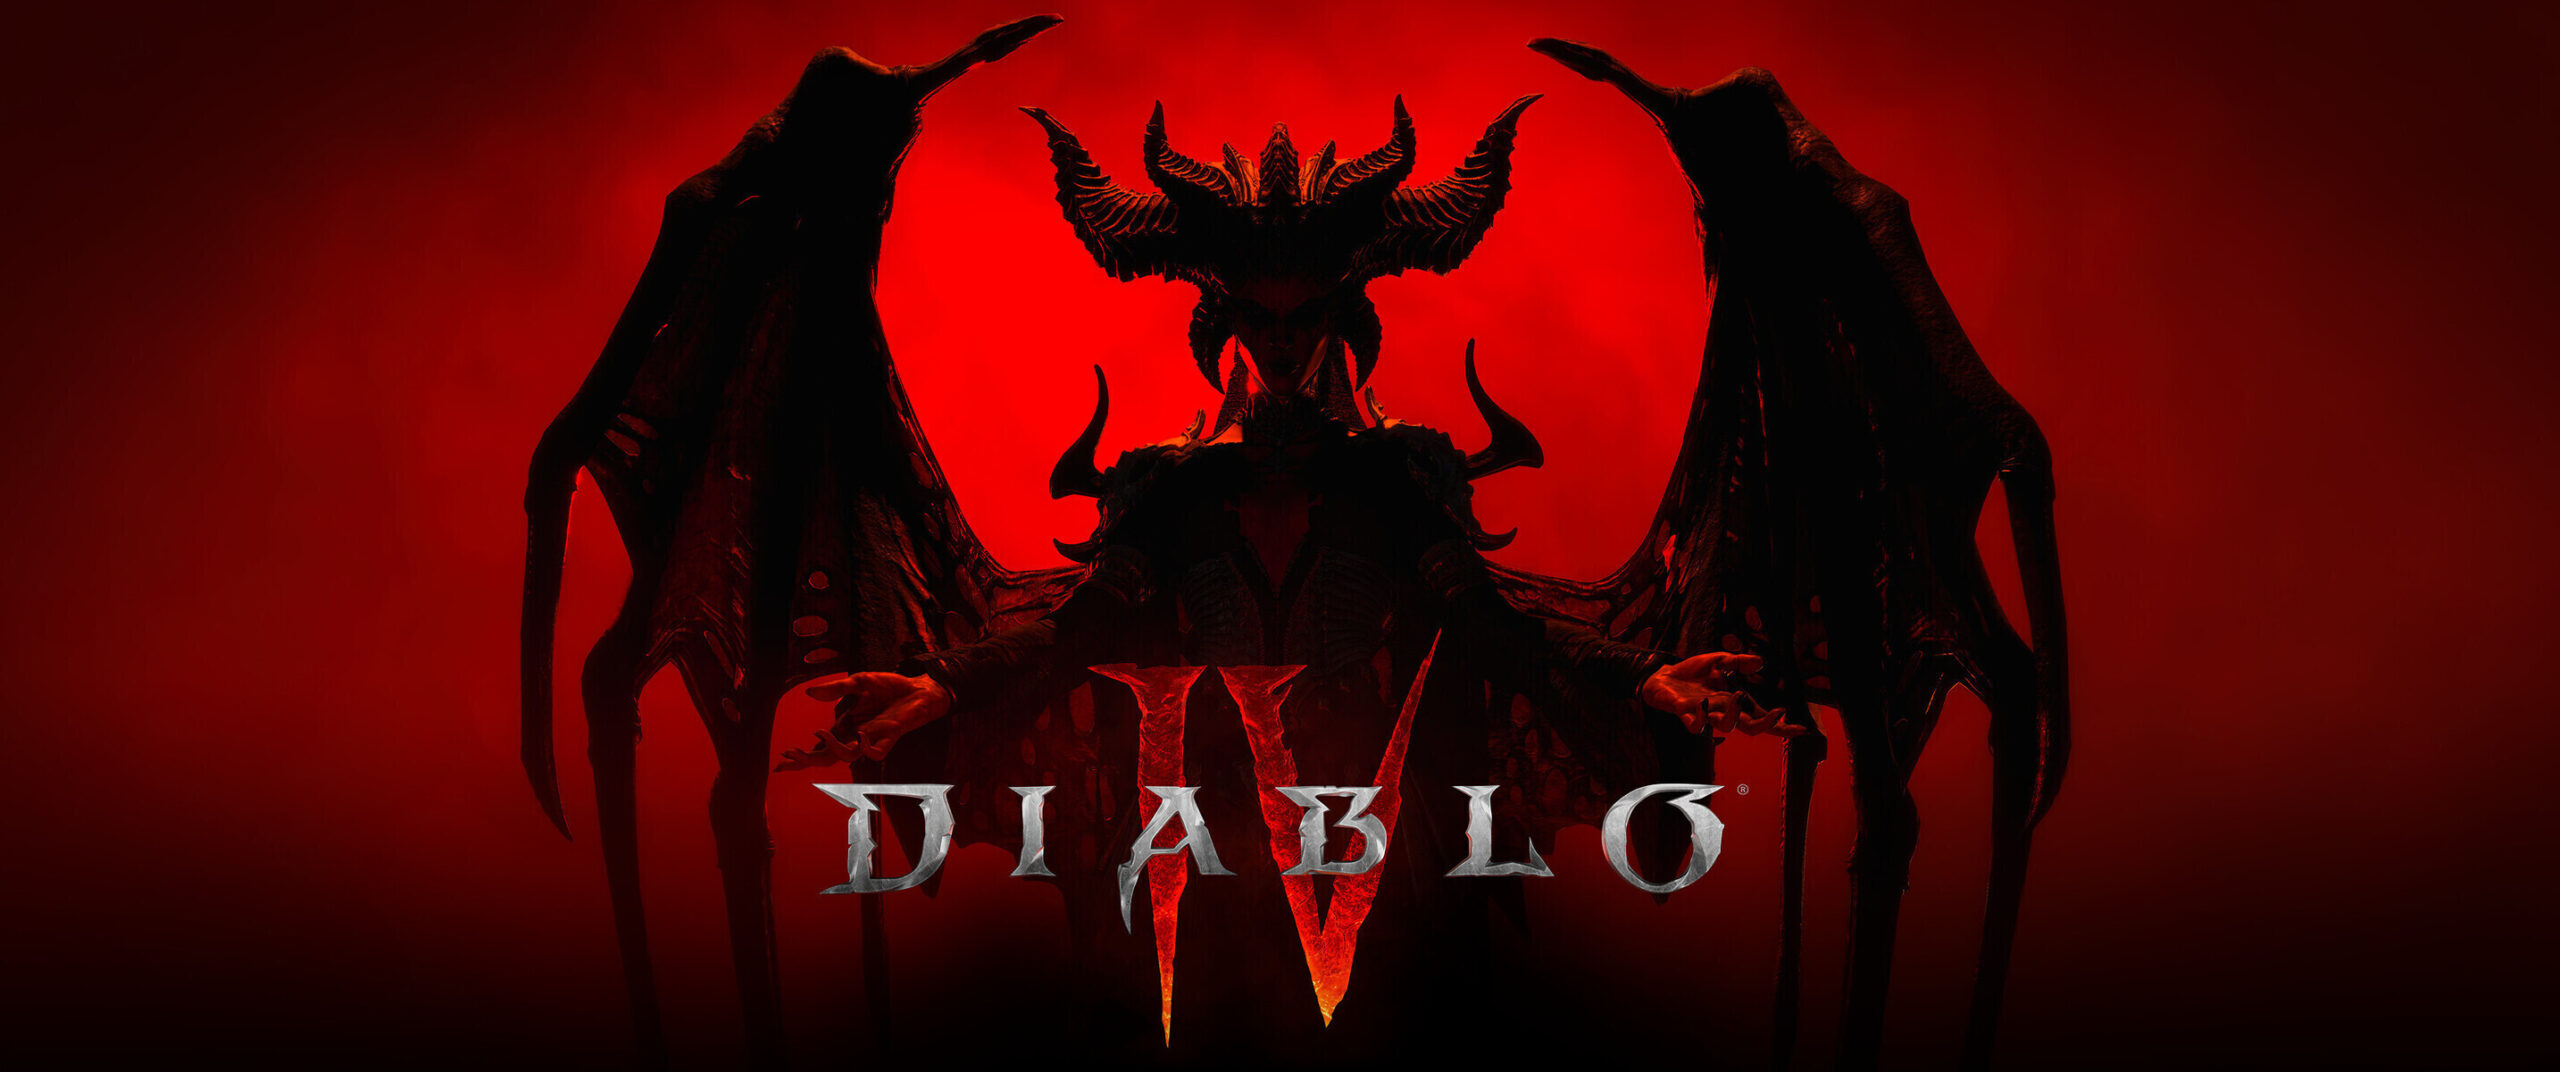 Diablo IV llegará a steam el 17 de octubre